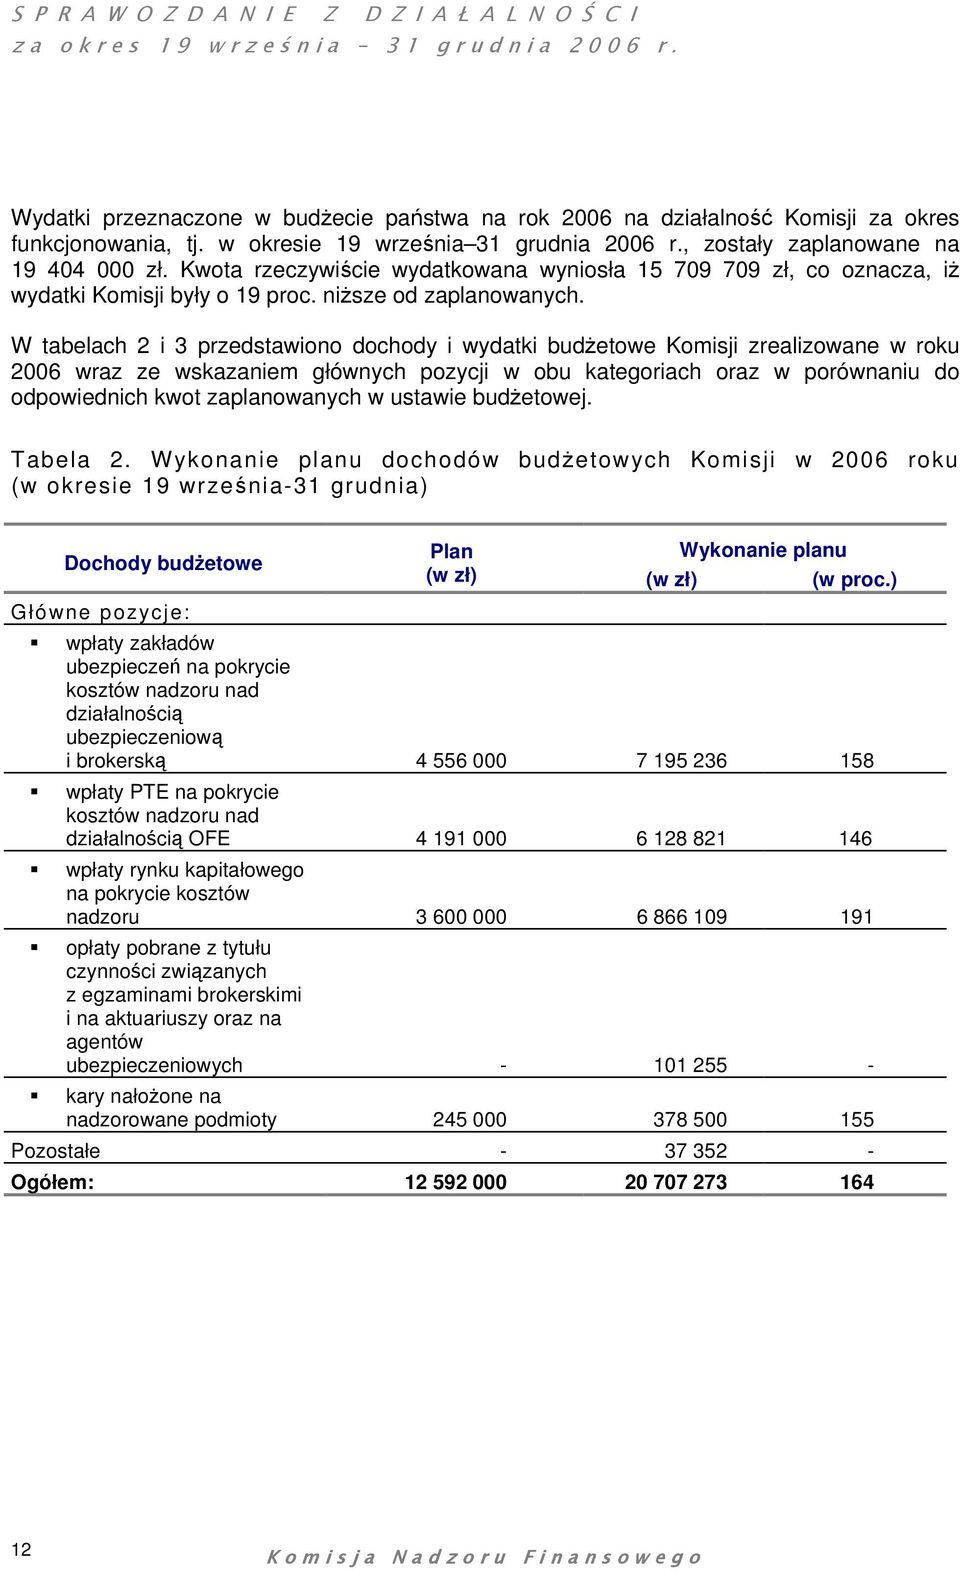 W tabelach 2 i 3 przedstawiono dochody i wydatki budżetowe Komisji zrealizowane w roku 2006 wraz ze wskazaniem głównych pozycji w obu kategoriach oraz w porównaniu do odpowiednich kwot zaplanowanych